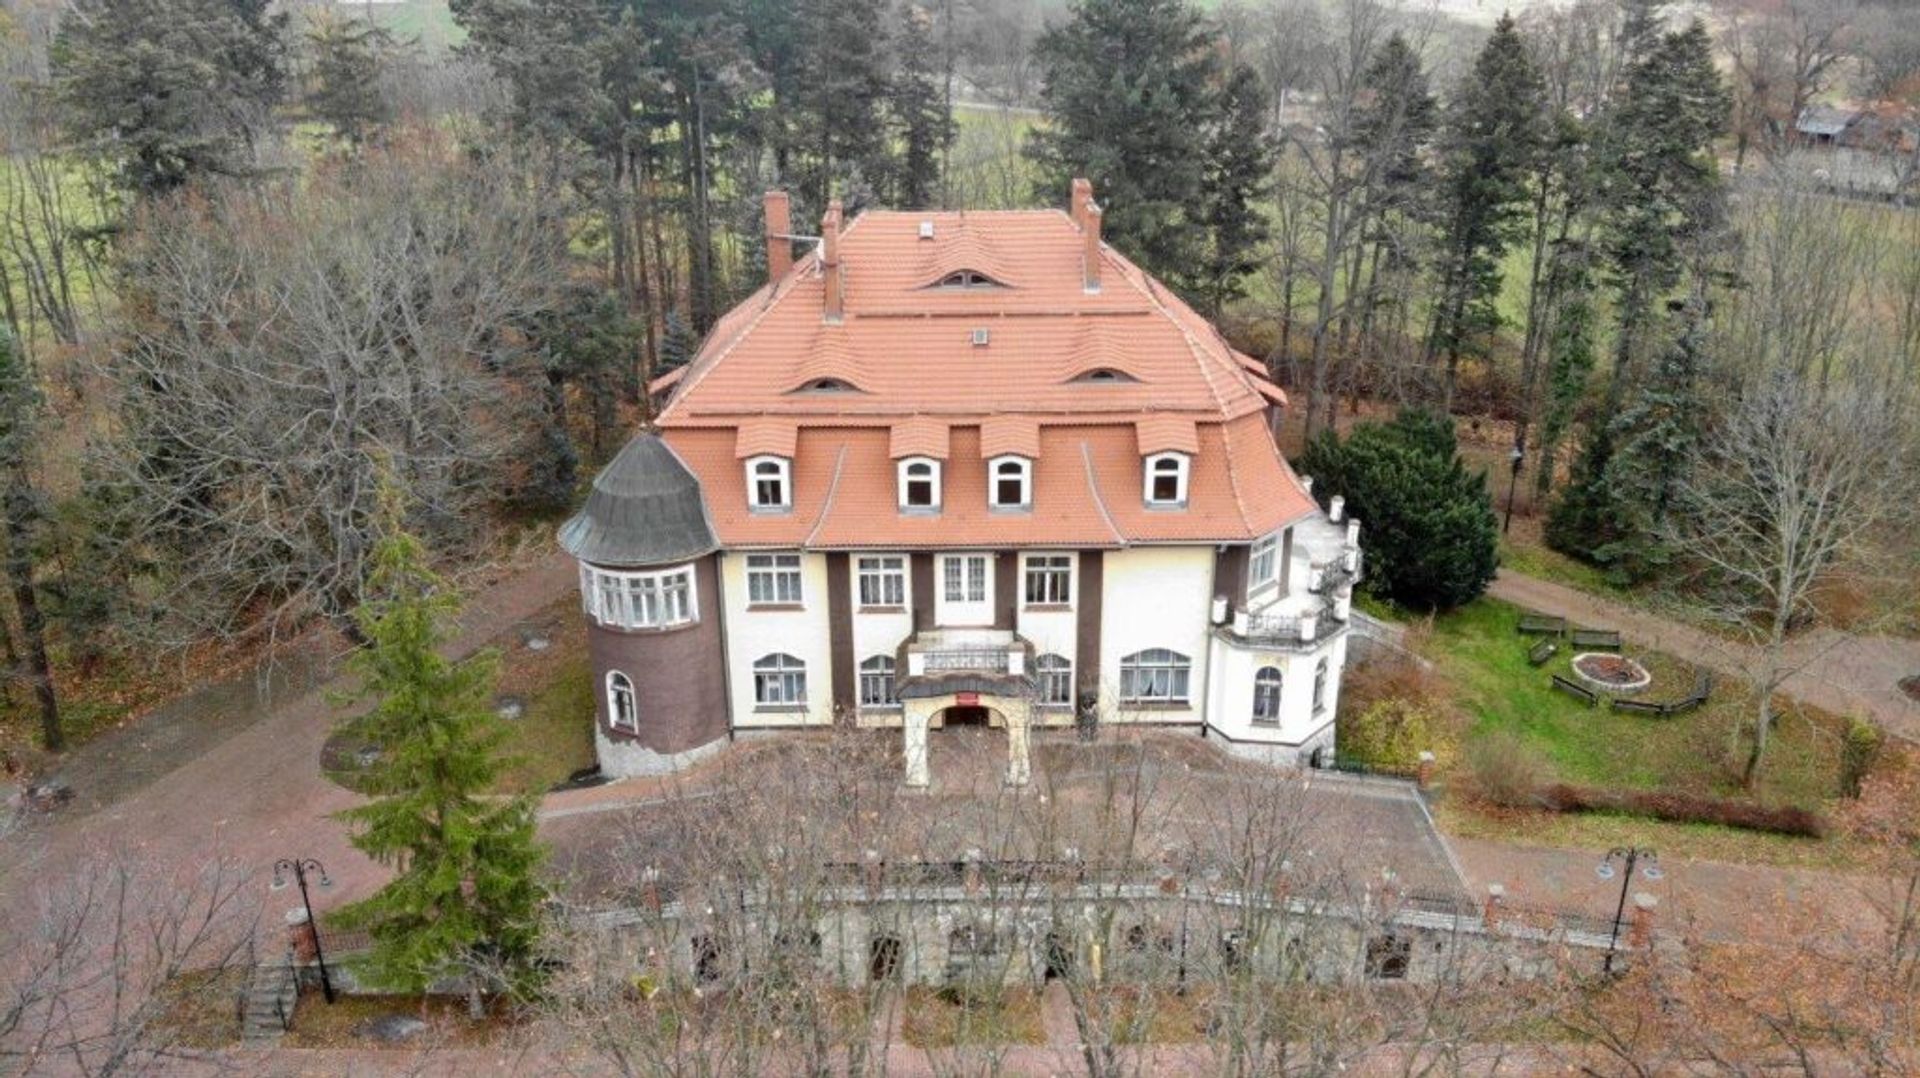 Ogłoszono przetarg na sprzedaż zabytkowego kompleksu pałacowo-parkowego w Muchowie na Dolnym Śląsku